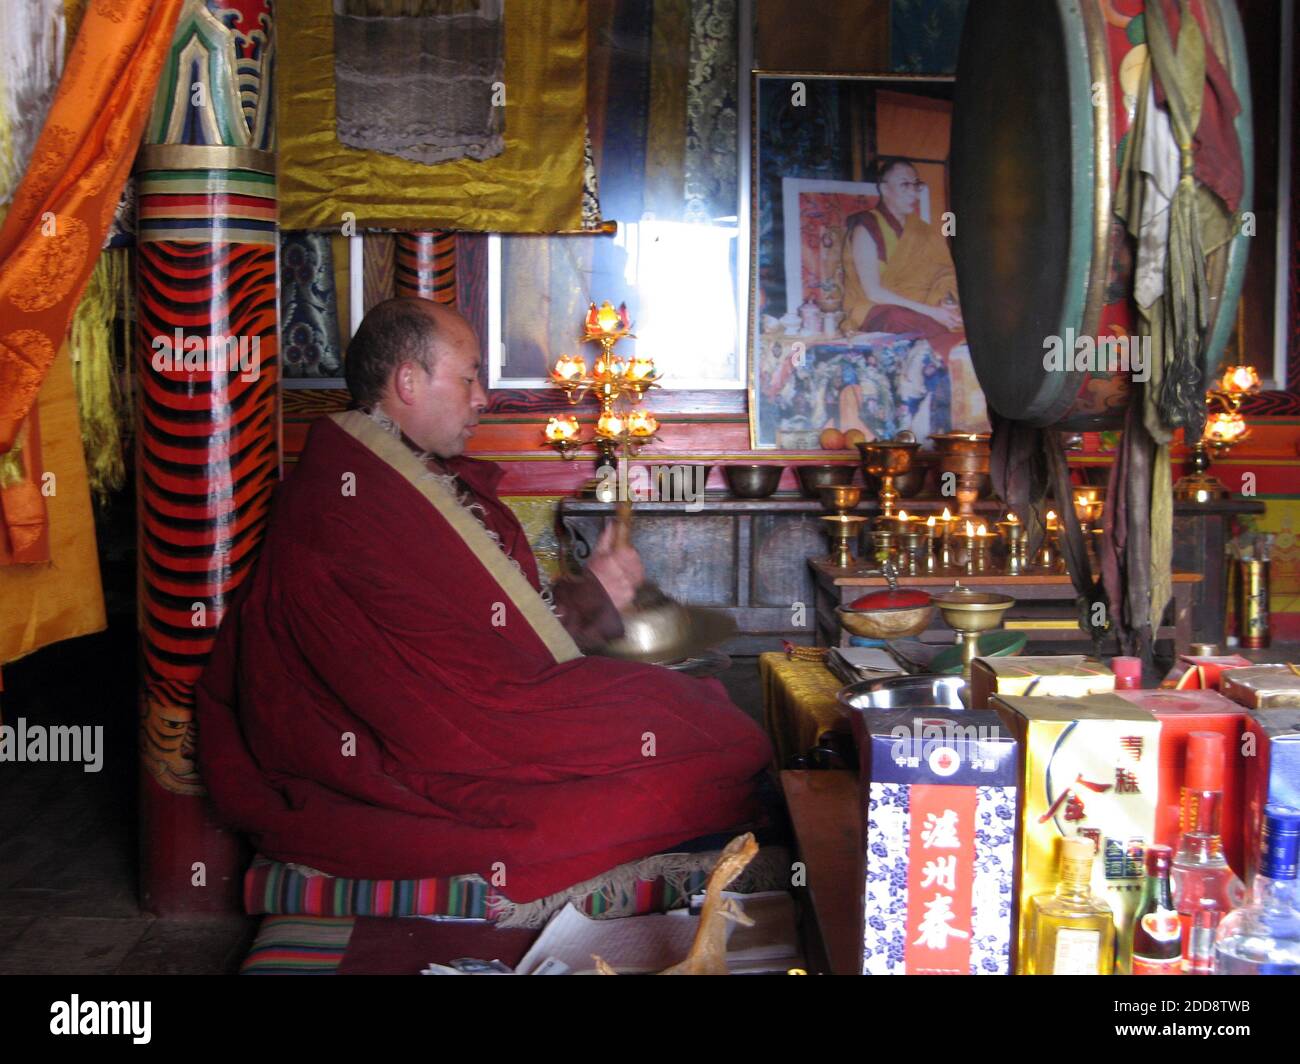 KEIN FILM, KEIN VIDEO, KEIN Fernsehen, KEIN DOKUMENTARFILM - EIN Mönch schlägt am 13. Februar 2009 in einem Kloster in der Provinz Qinghai auf eine Trommel. Hinter ihm an der Wand ist ein Foto des Dalai Lama. Solche Fotos sind in China verboten und die Platzierung in diesem Klostersaal ist ein Akt des Trotzes. Am Rande des ersten Jahrestages einer Massenrevolte auf dem tibetischen Plateau, die die schlimmsten ethnischen Unruhen in China seit fast zwei Jahrzehnten markierte, siechen viele Tibeter noch immer unter Chinas Daumen. Foto von Tim Johnson/MCT/ABACAPRESS.COM Stockfoto